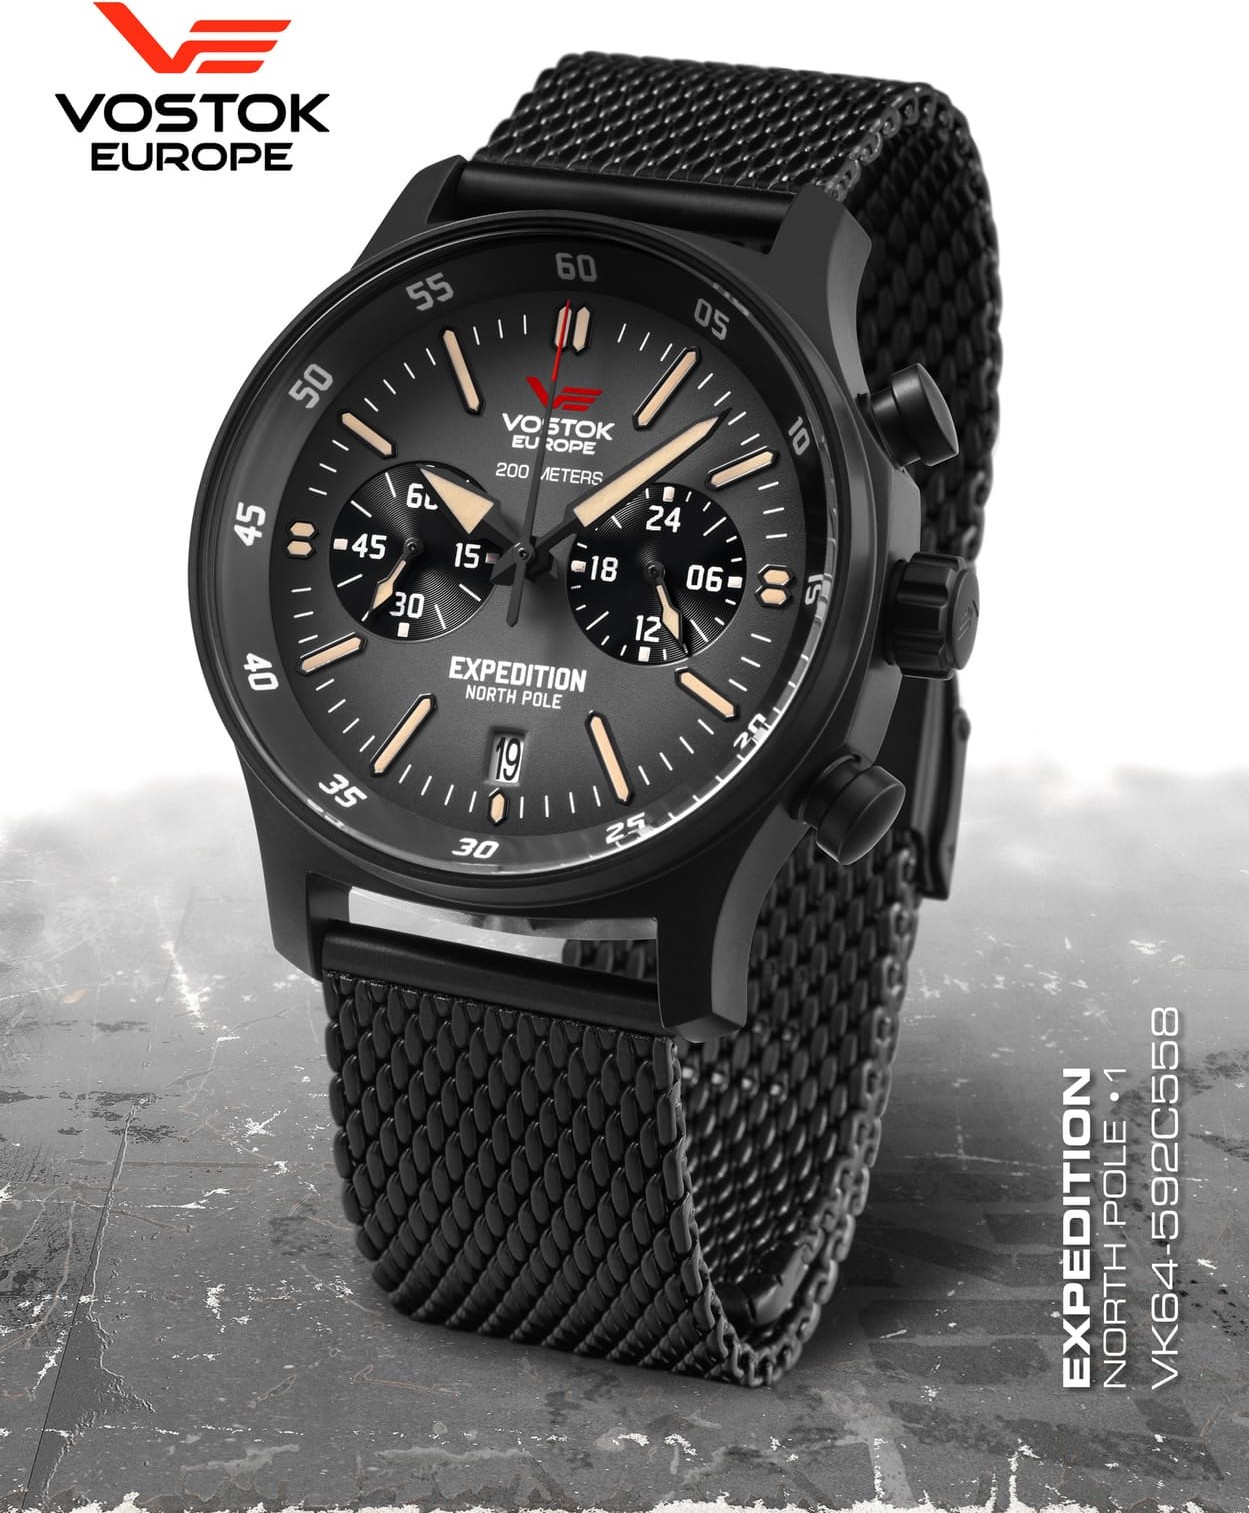  Vostok Europe Expedition Nordpol 1 Chronograph schwarz 